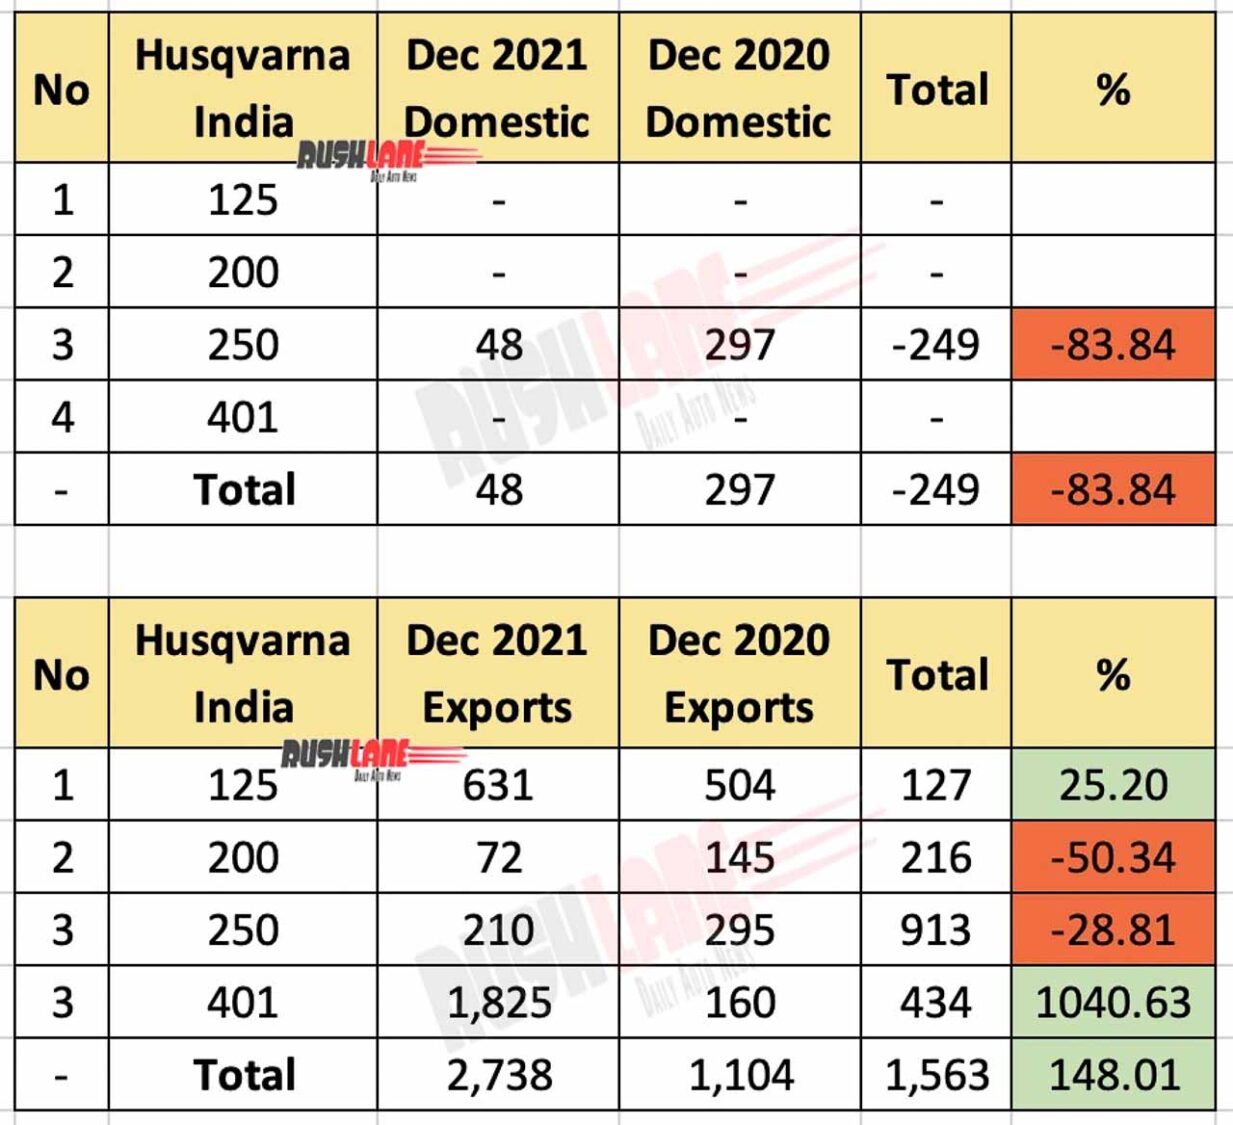 Husqvarna India sales and exports - Dec 2021